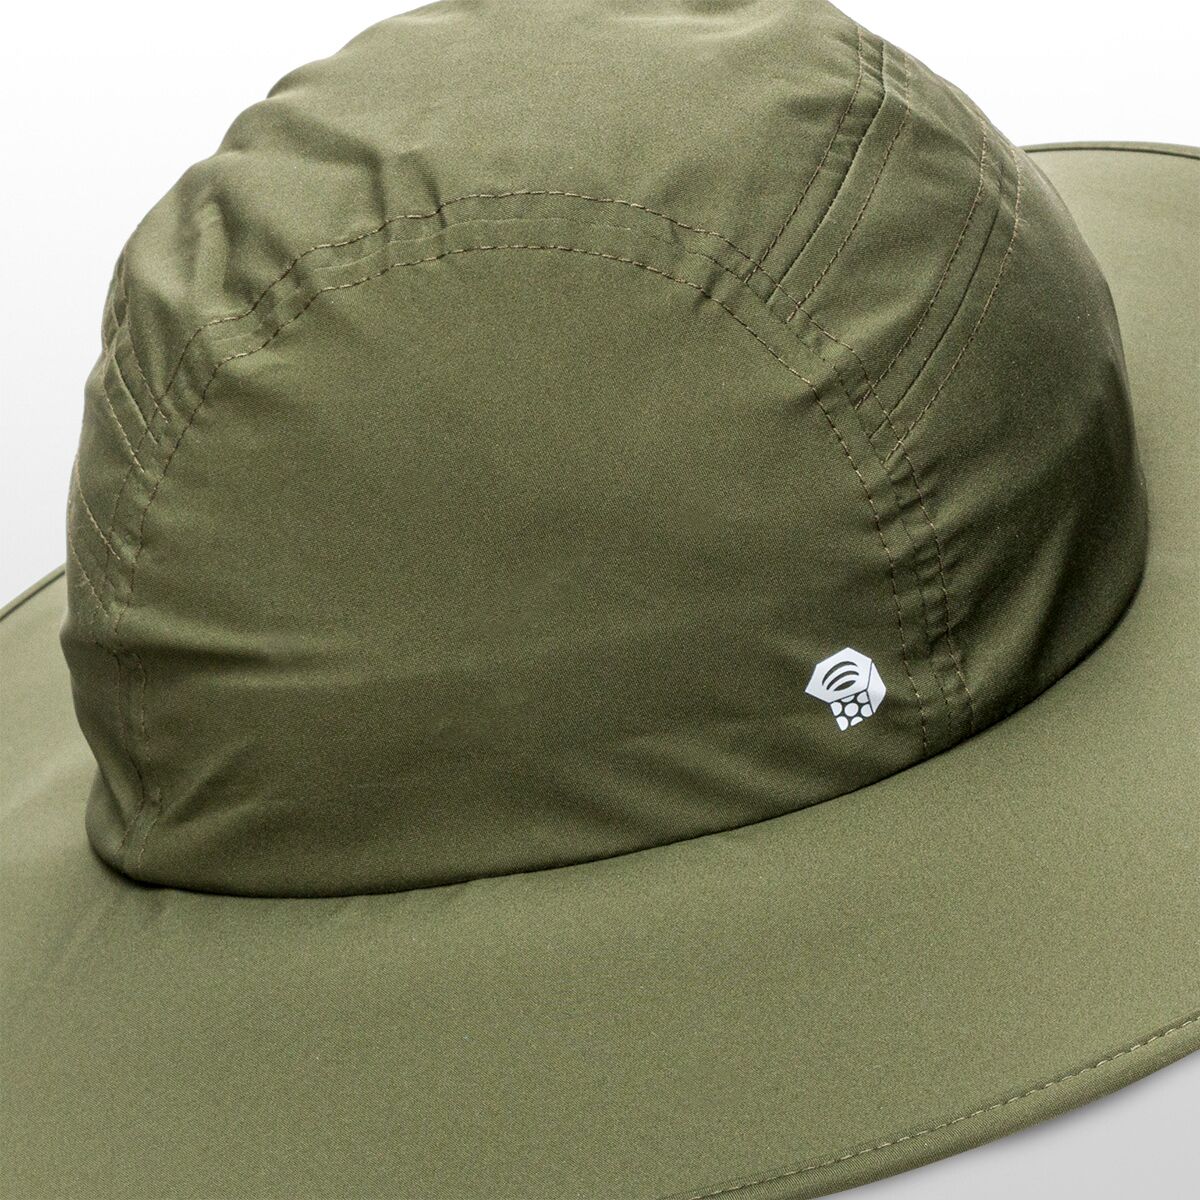 Mountain Hardwear Exposure/2 GORE-TEX Paclite Rain Hat - Men